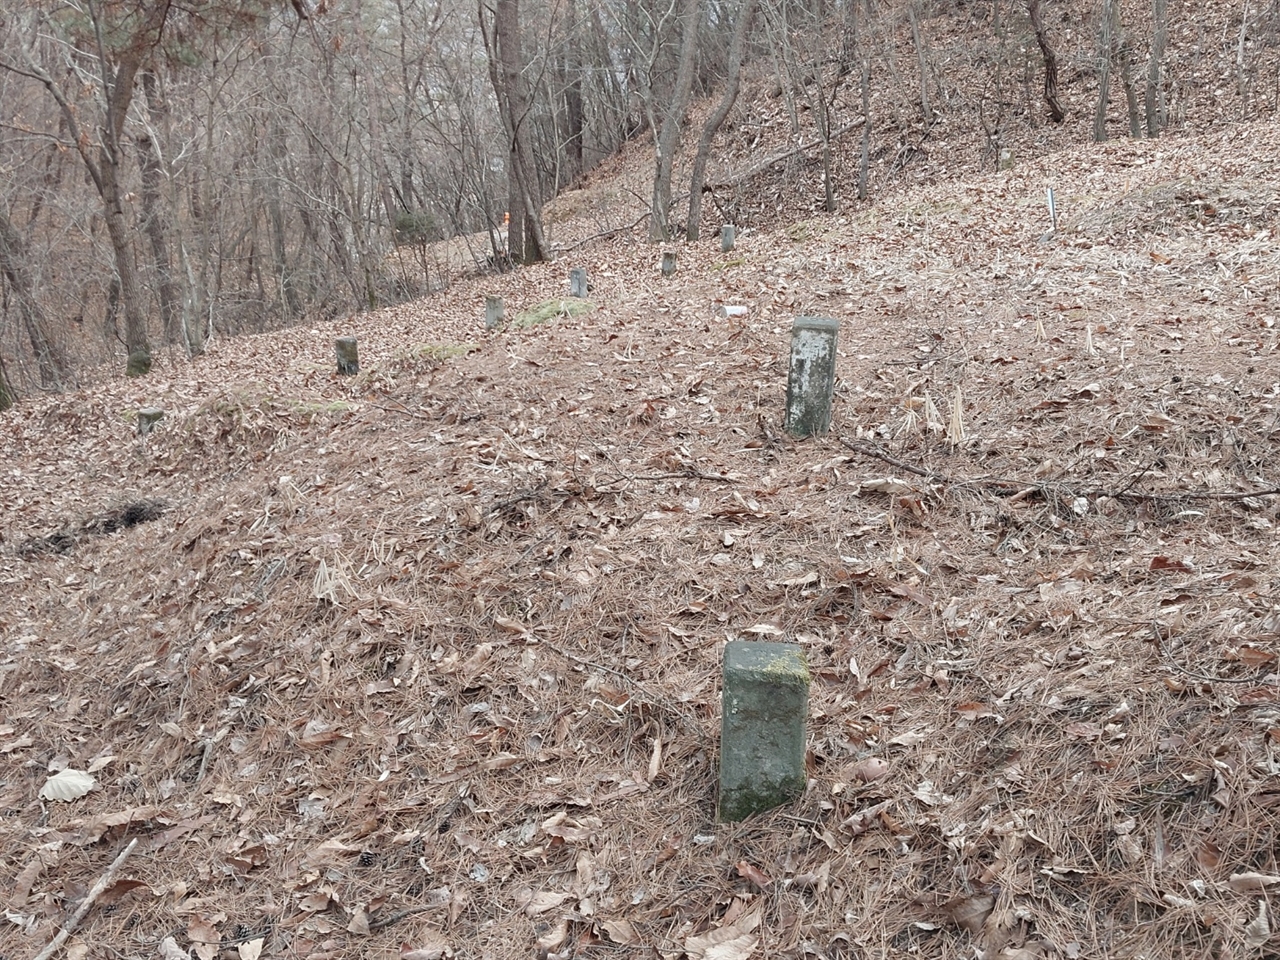 대전추모공원 내 대전교도소 무연고묘역. 10기가 조성돼 있는데 '교도소'라고 새긴 표지가 없다면 묘지인지 조차확인하기 어렵다.